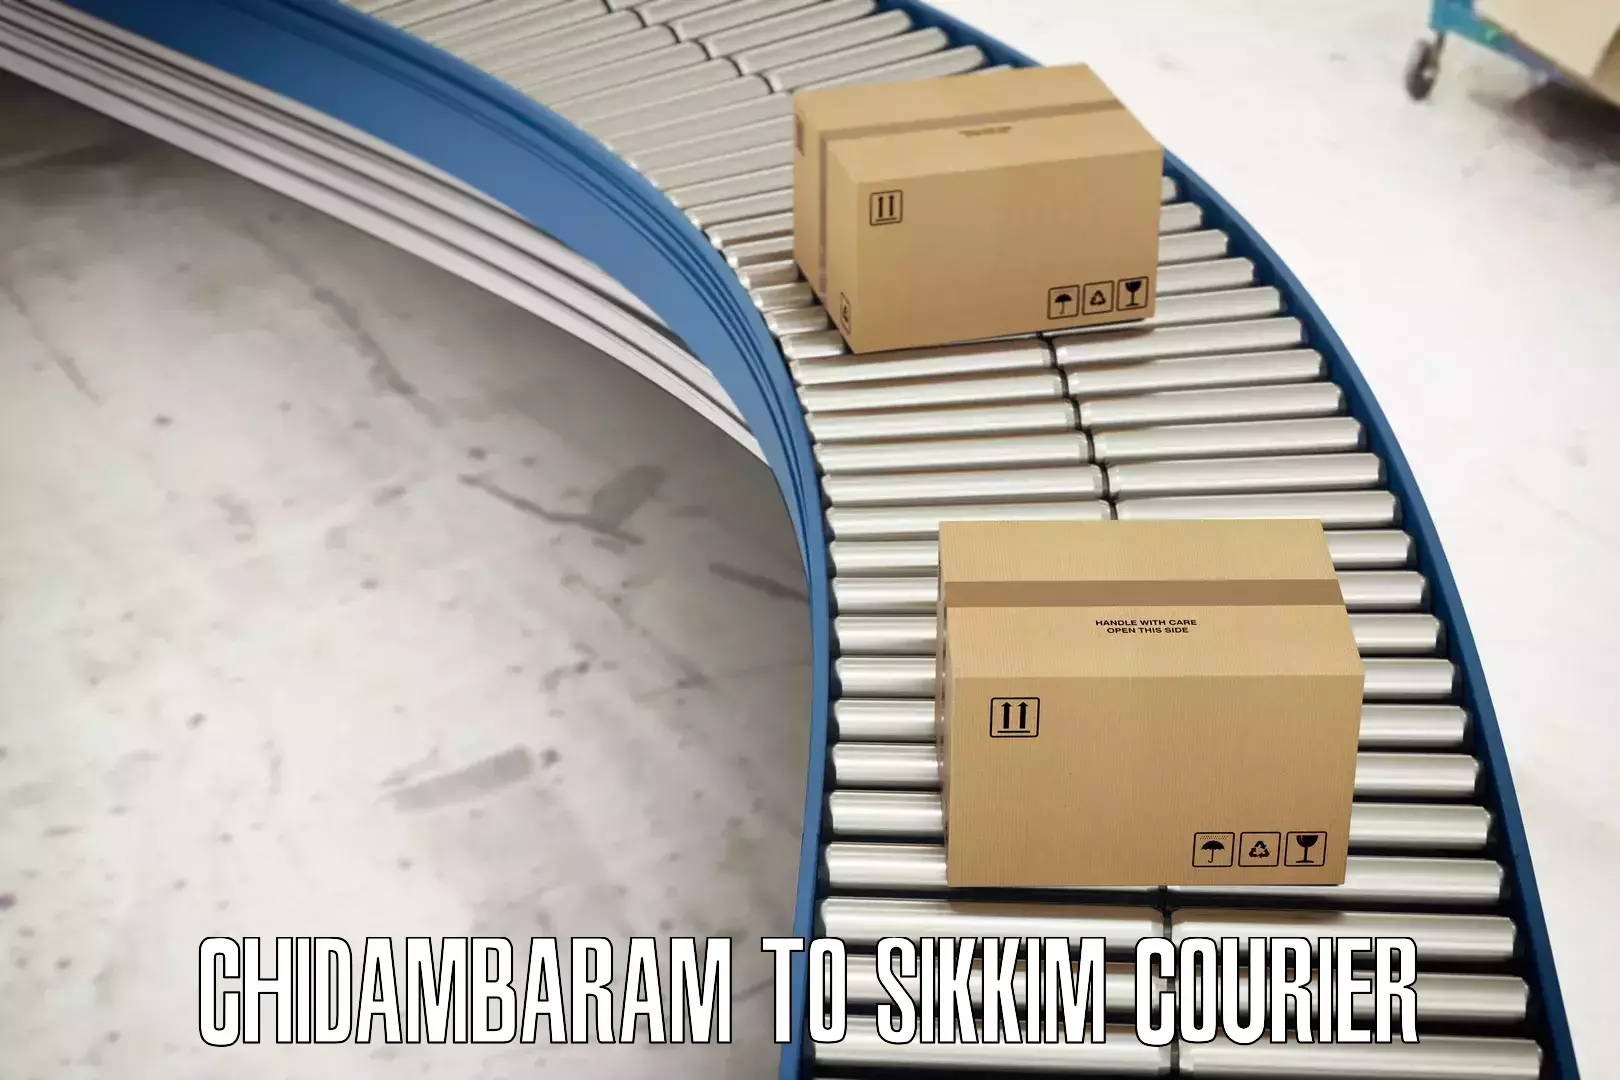 Reliable package handling Chidambaram to Geyzing